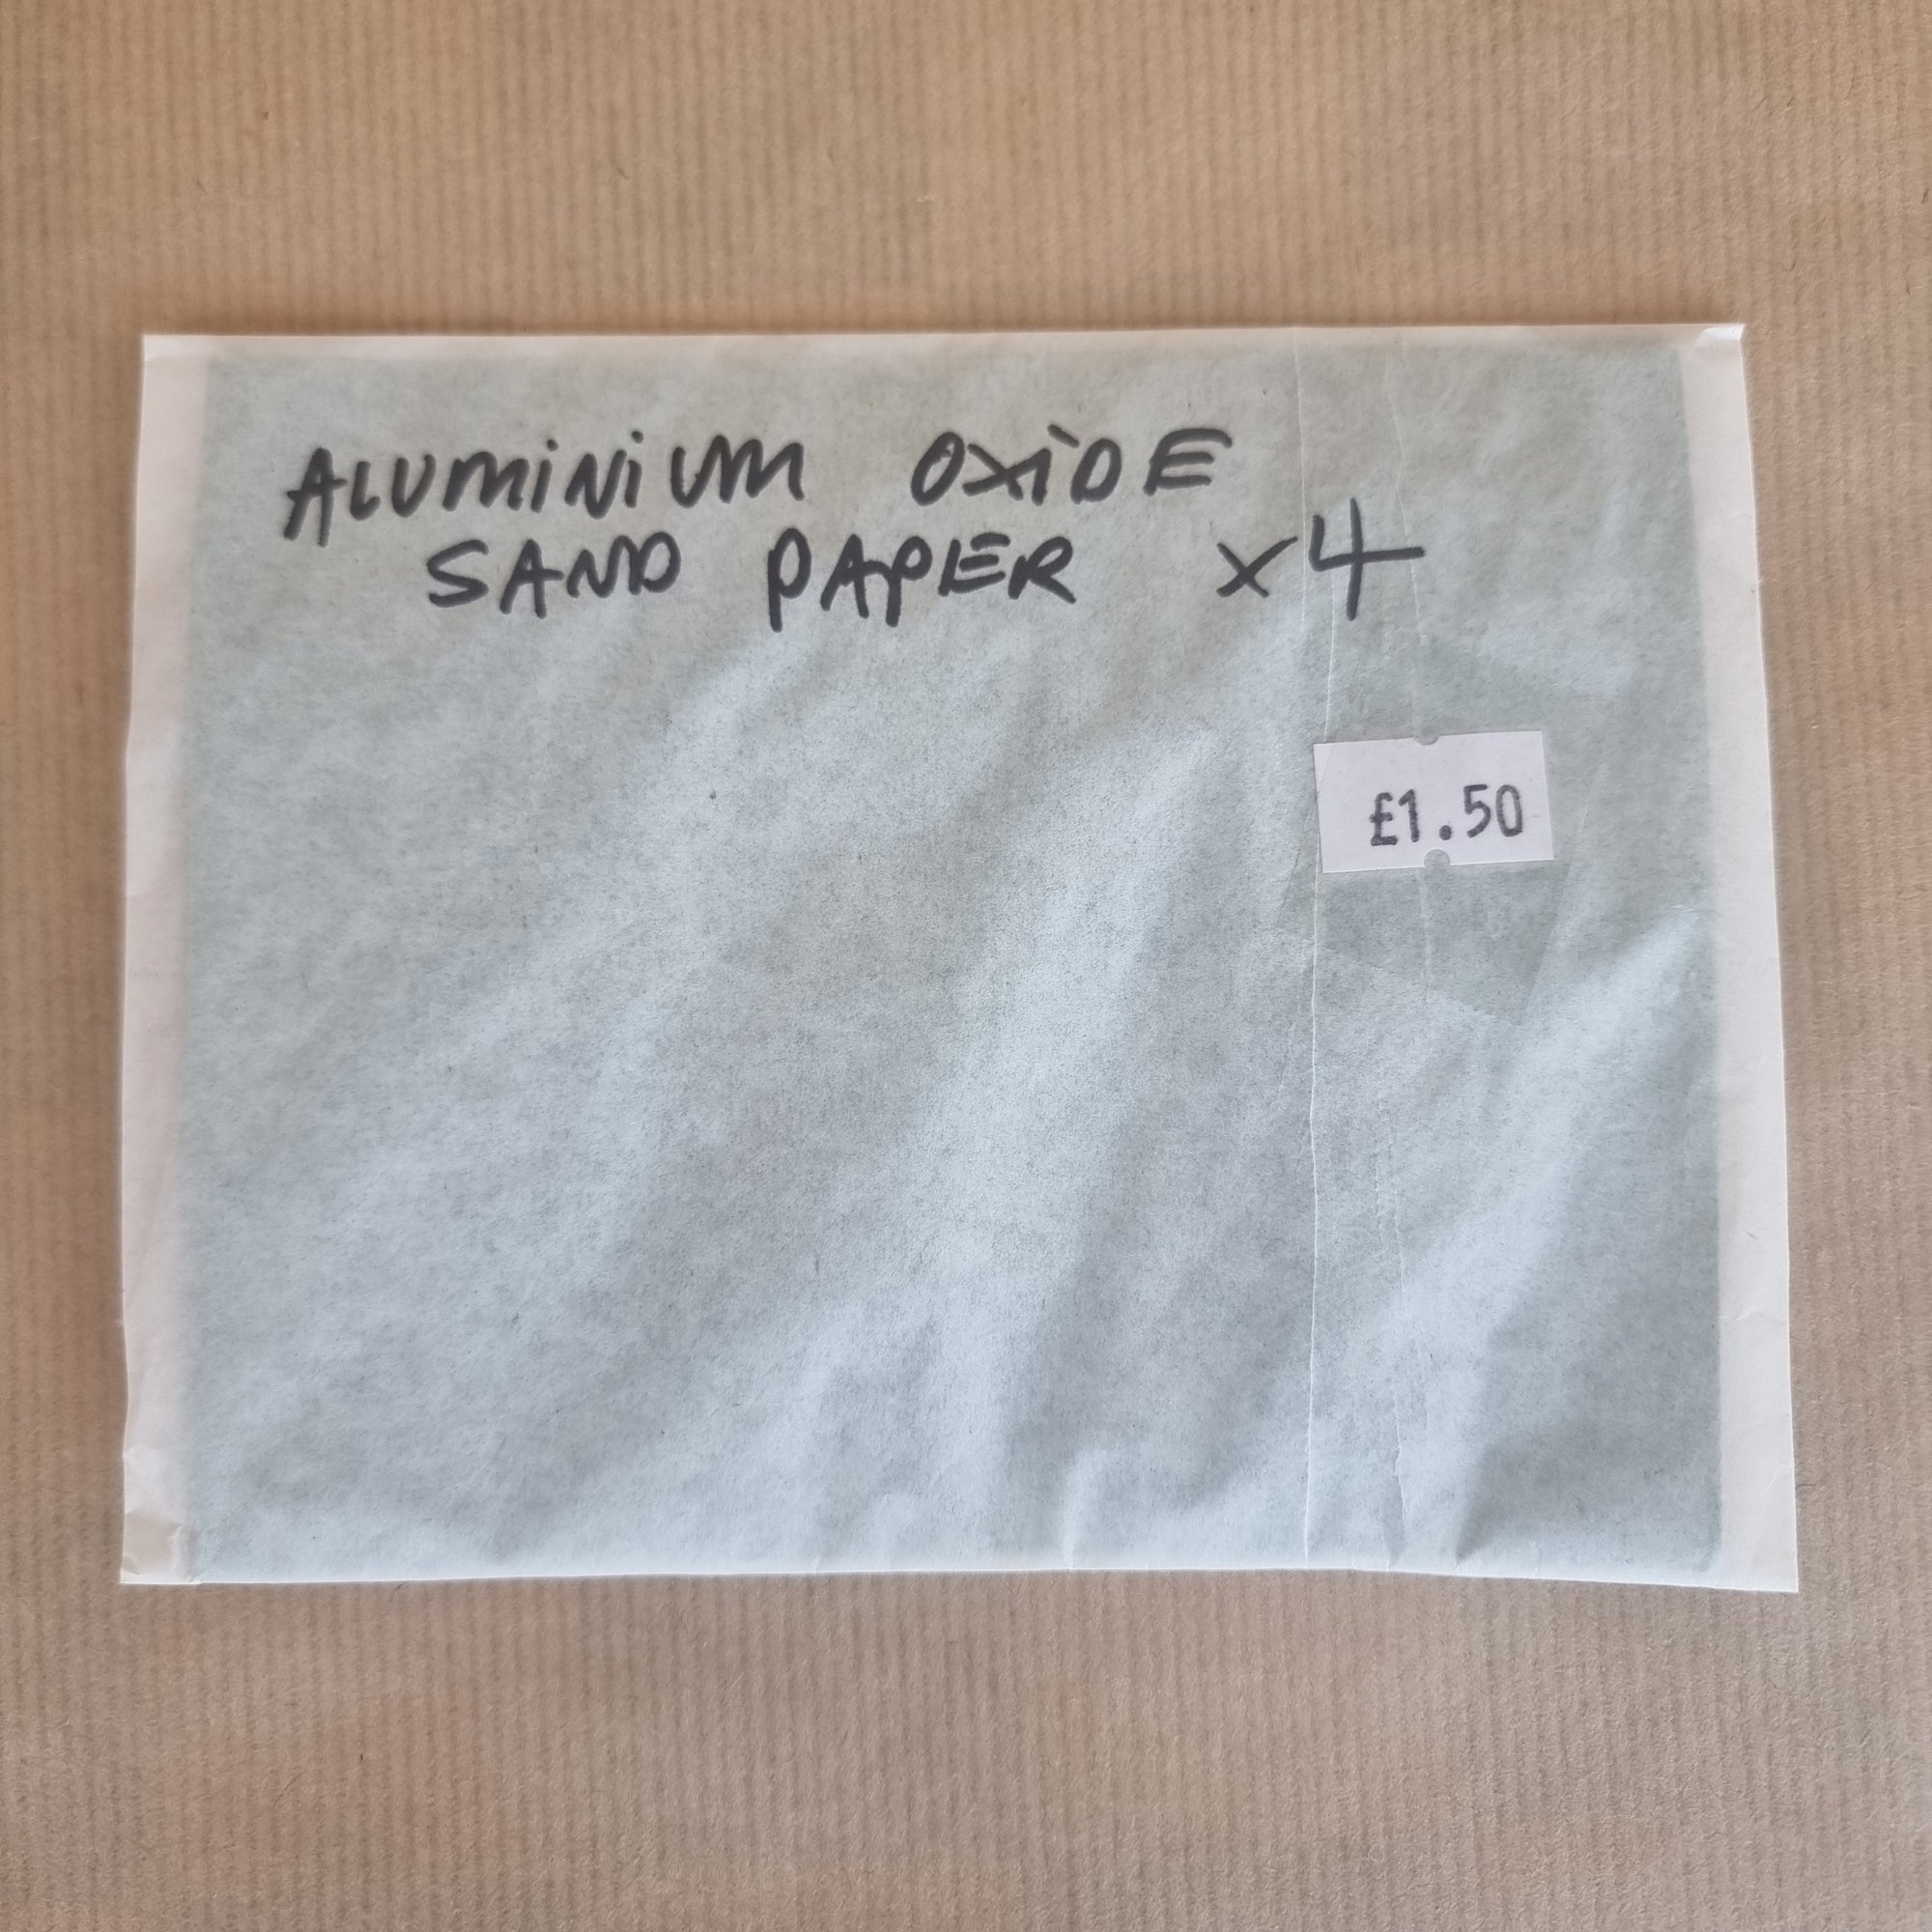 Aluminium Oxide Sand Paper